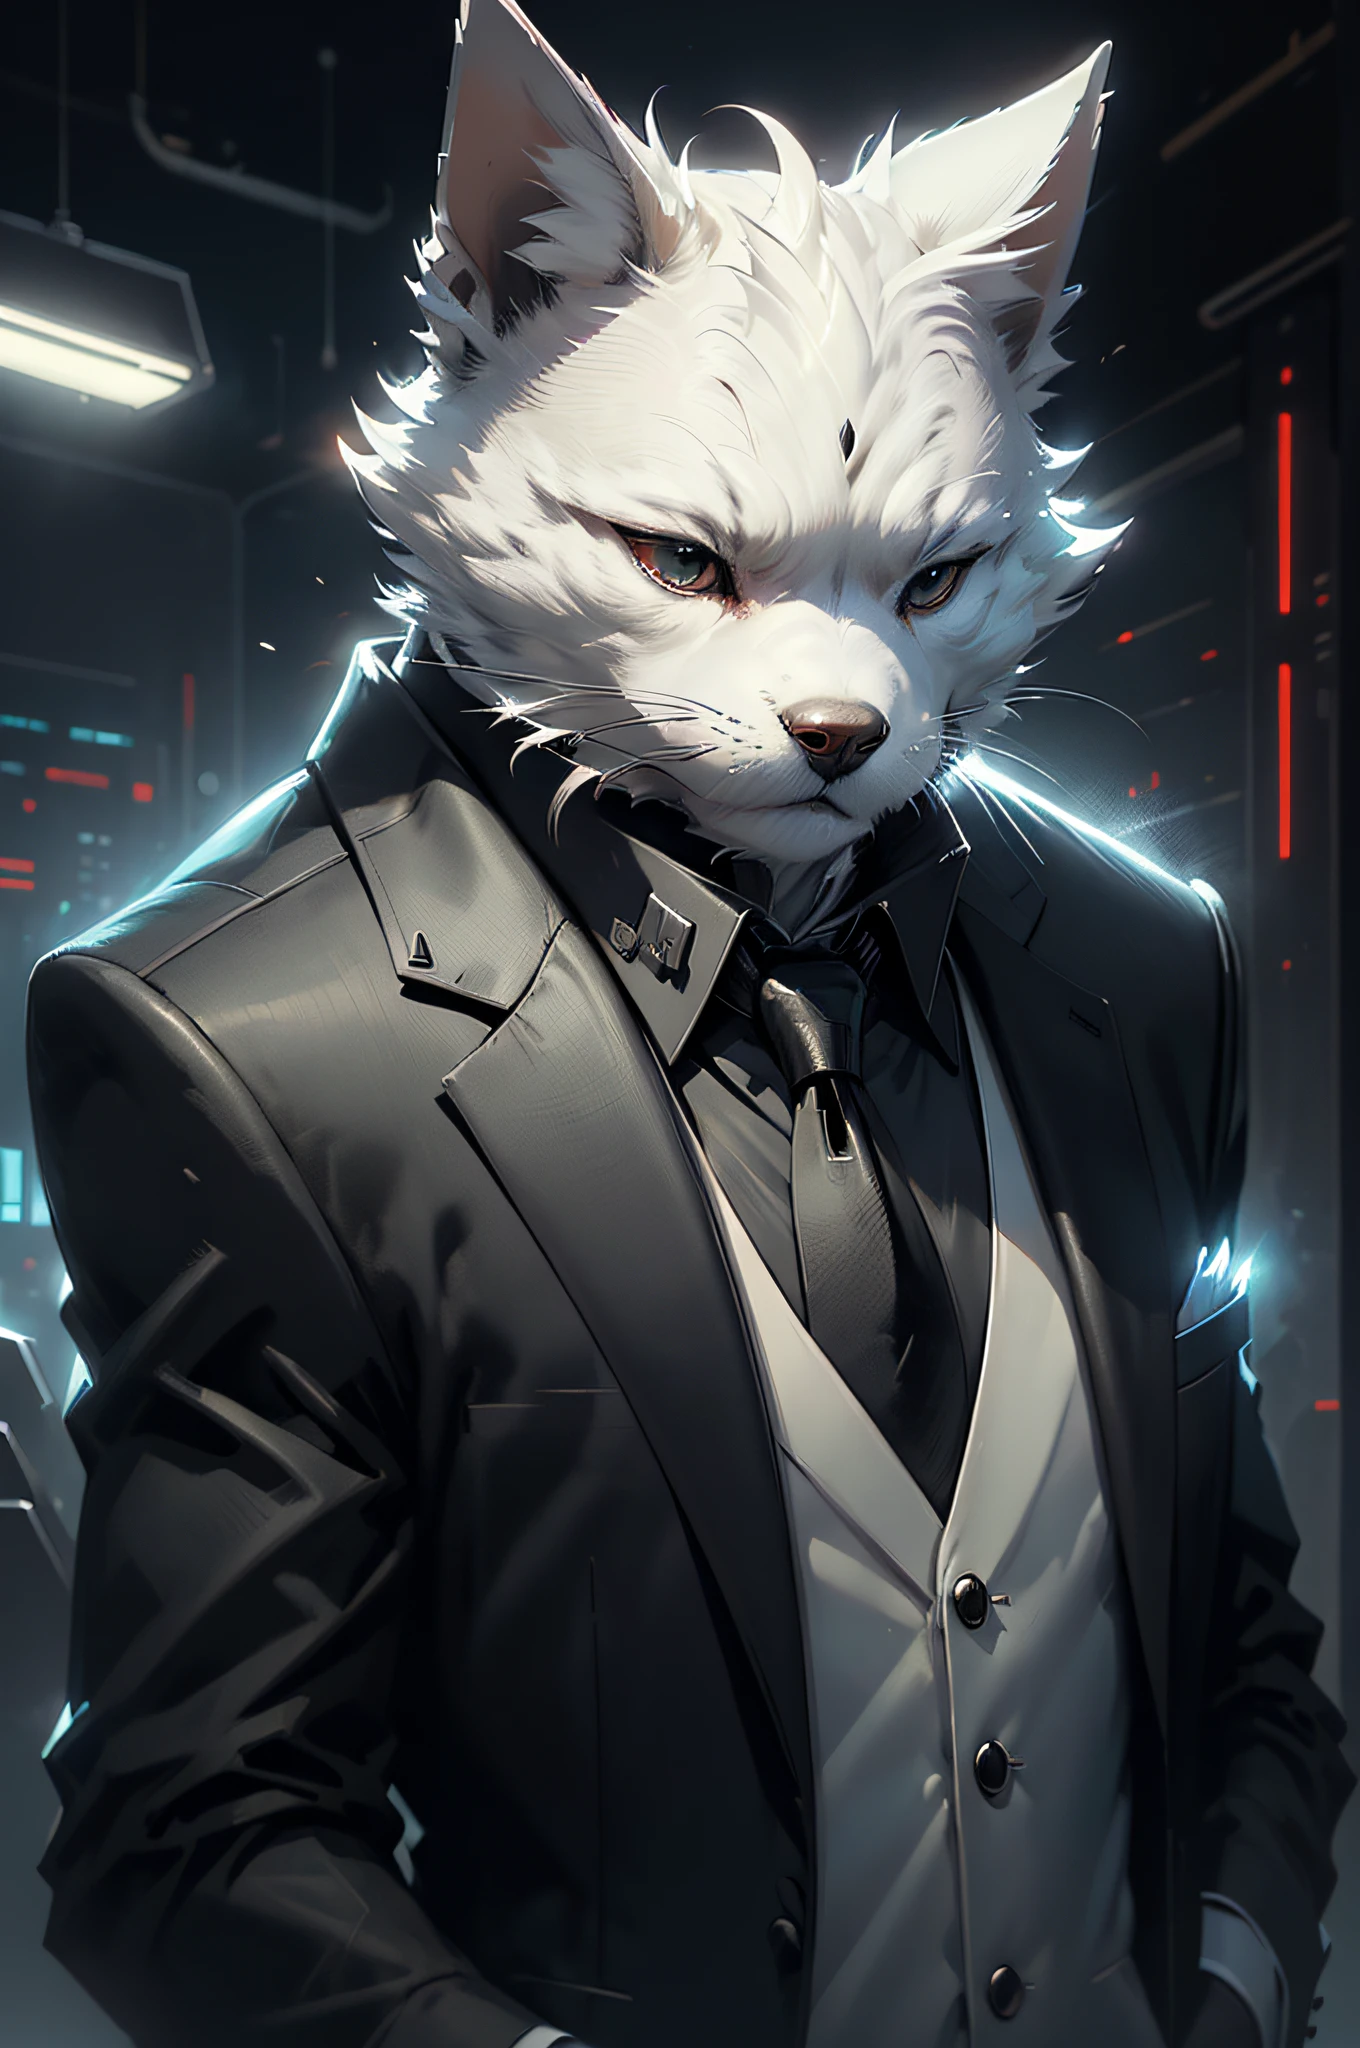 (Hombre de traje negro y corbata)tira cómica、Perro terrier blanco antropomorfo、ciberpunk